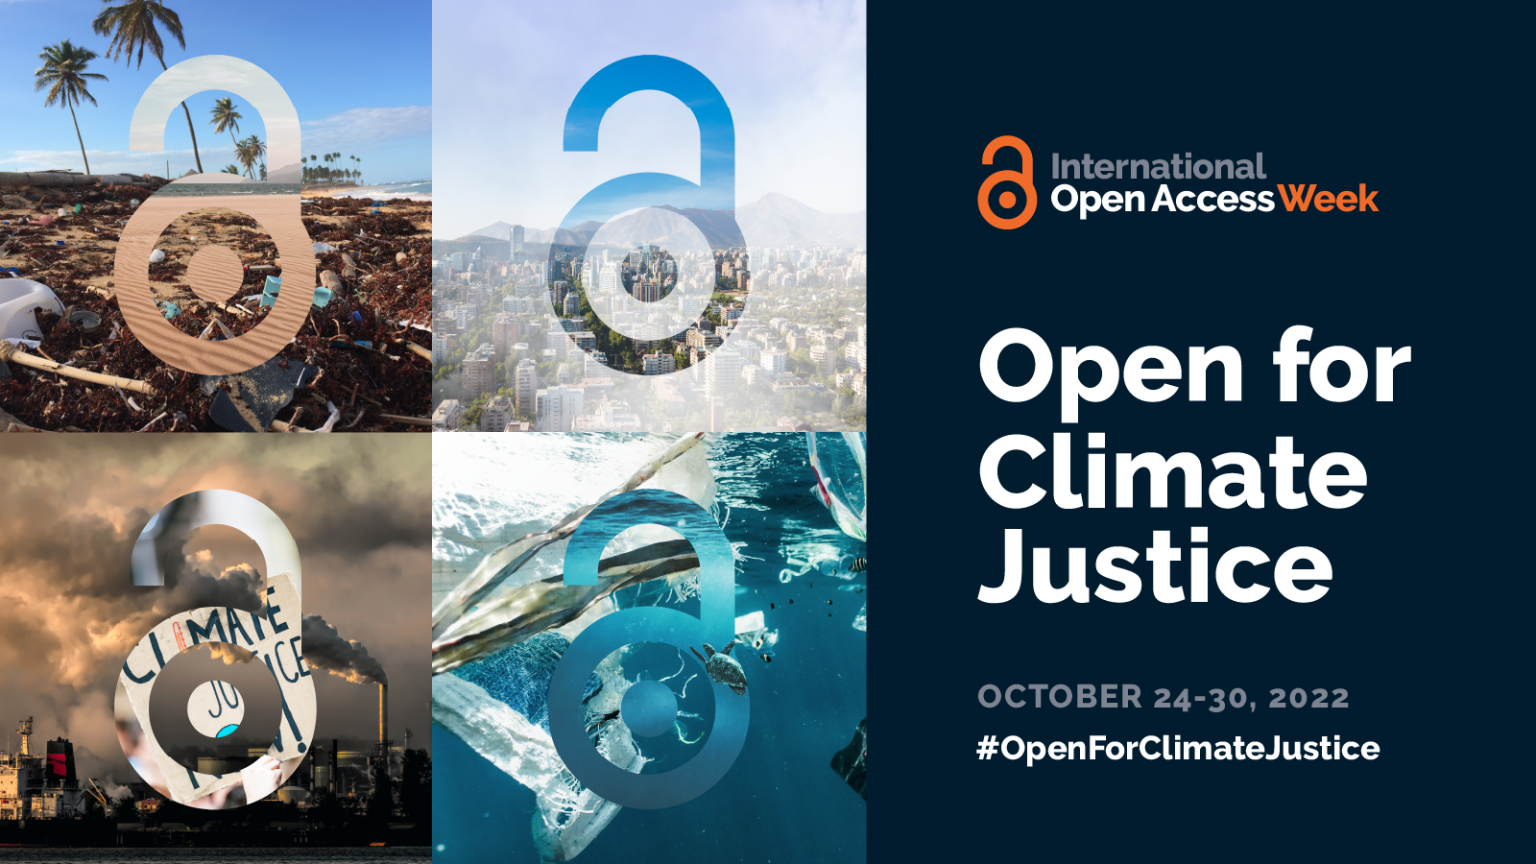 La Semaine internationale du libre accès 2022 mettra l'accent sur "Ouvert pour la justice climatique"